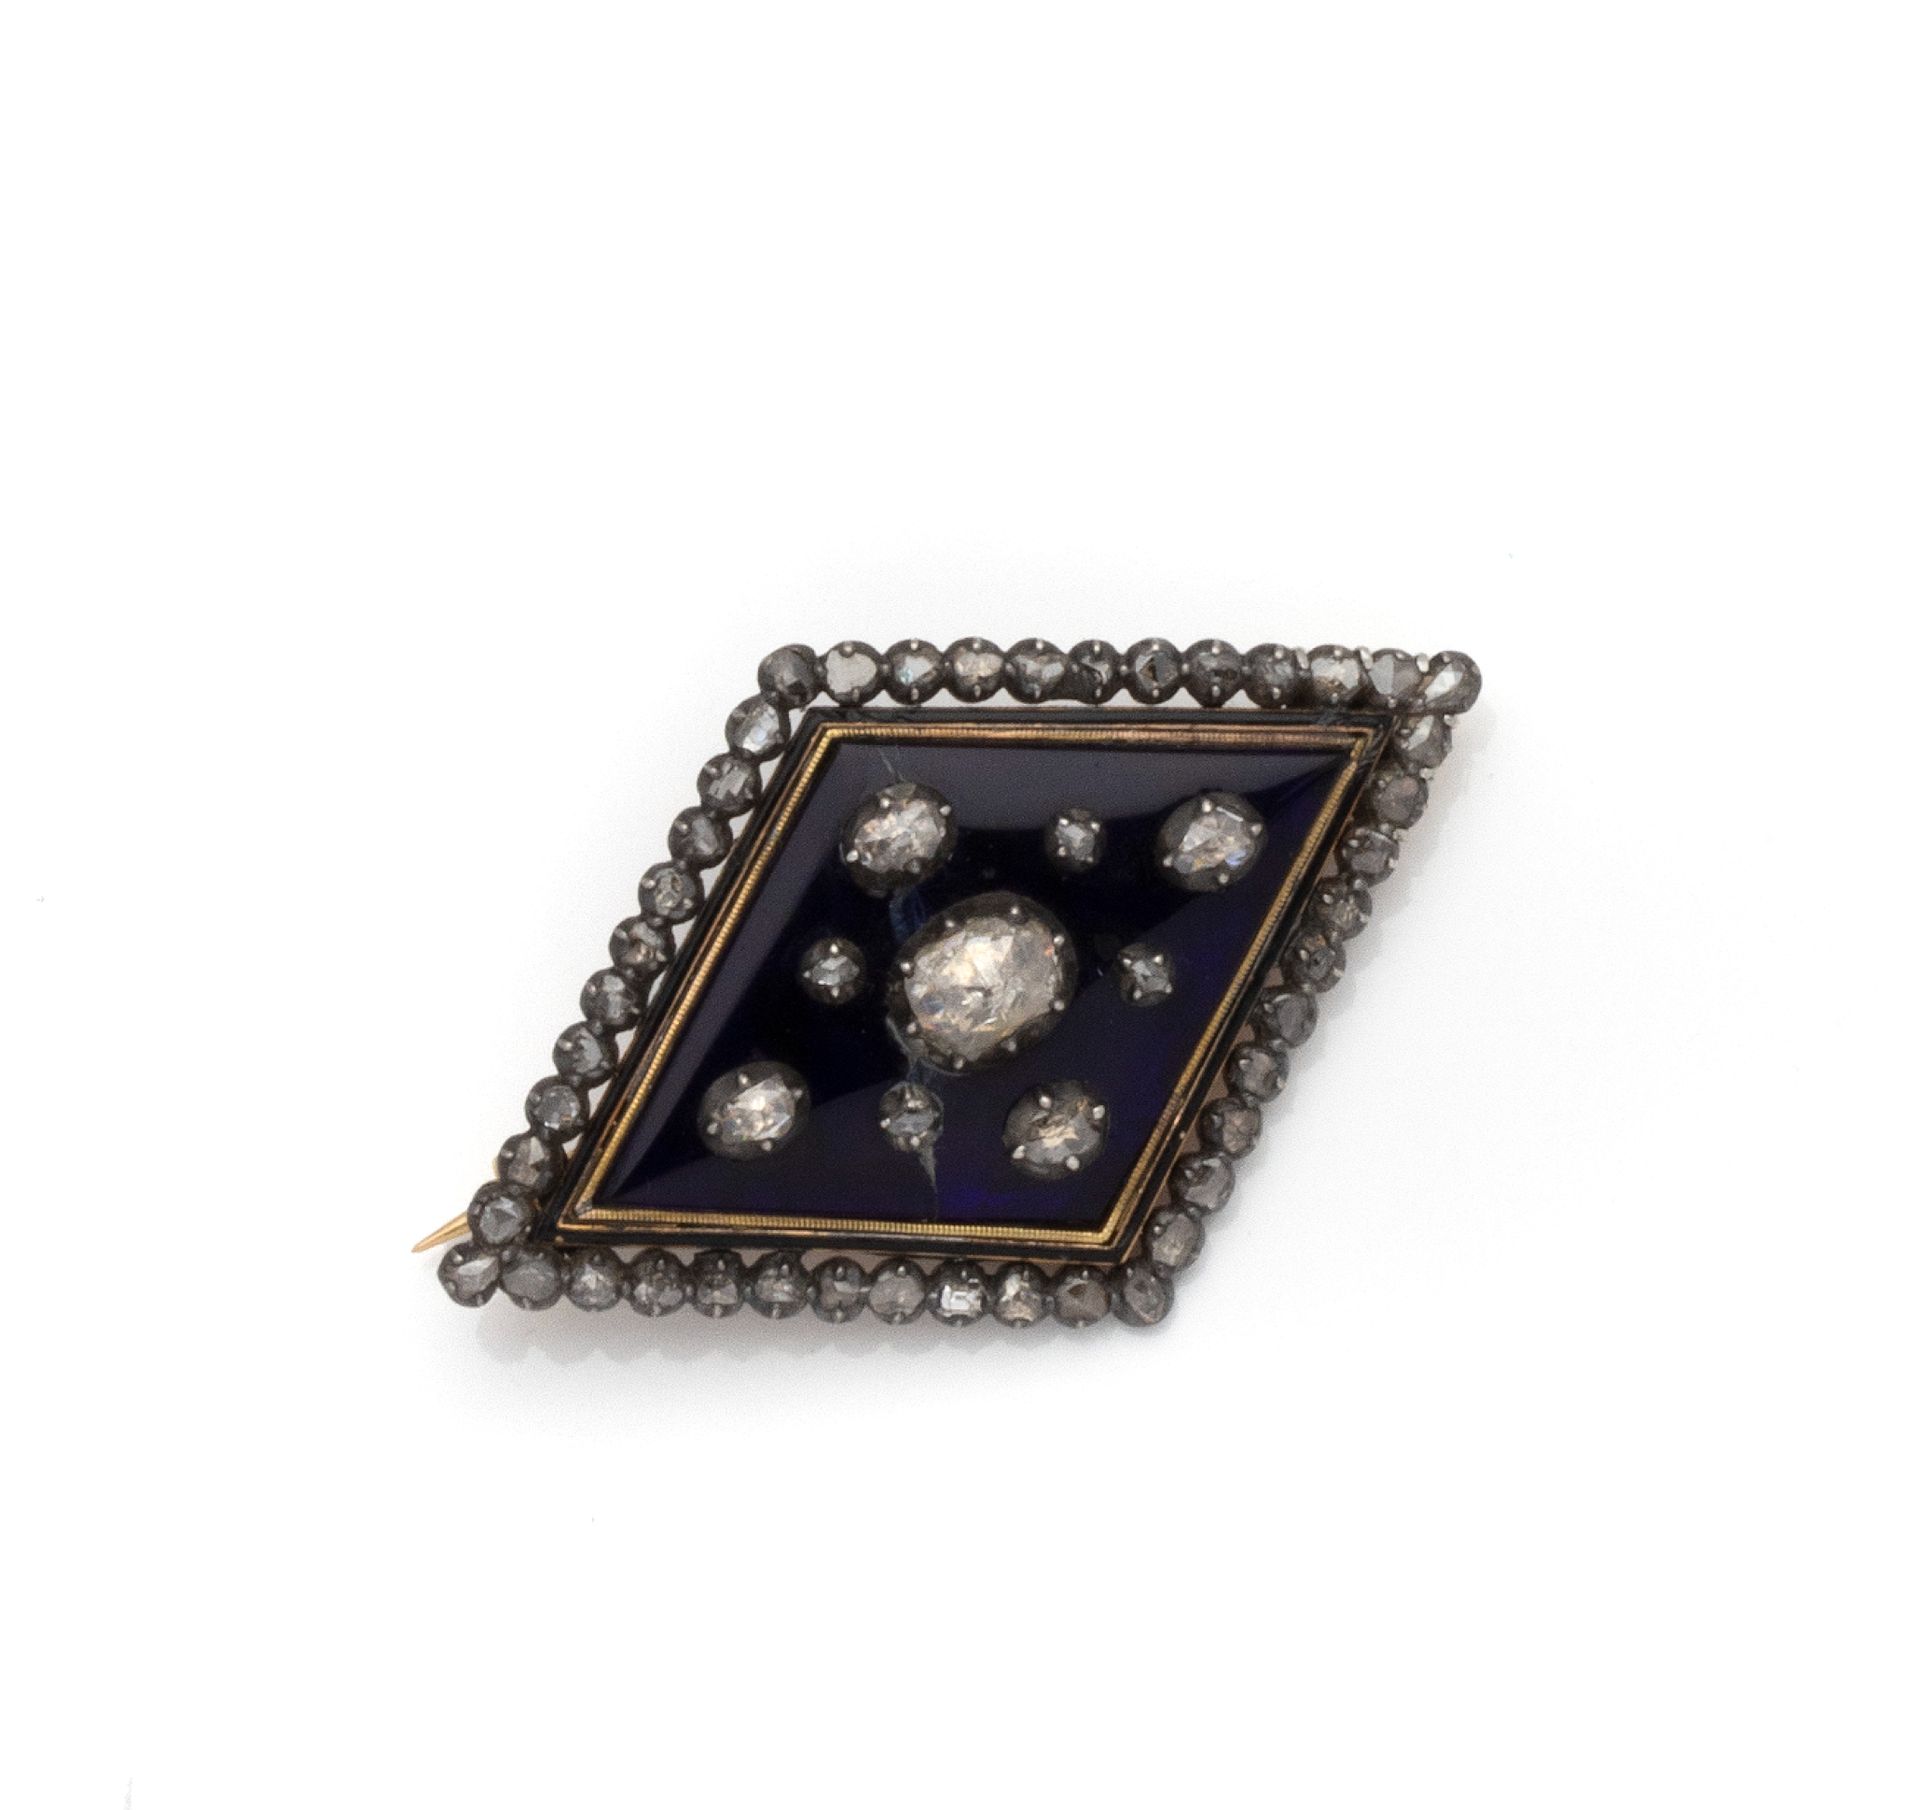 Null 双色18K（750/1000）金和银（800/1000）胸针，带蓝色玻璃板，镶嵌9颗玫瑰切割钻石。边框上有一排44颗玫瑰式切割钻石的装饰。

法国作品&hellip;